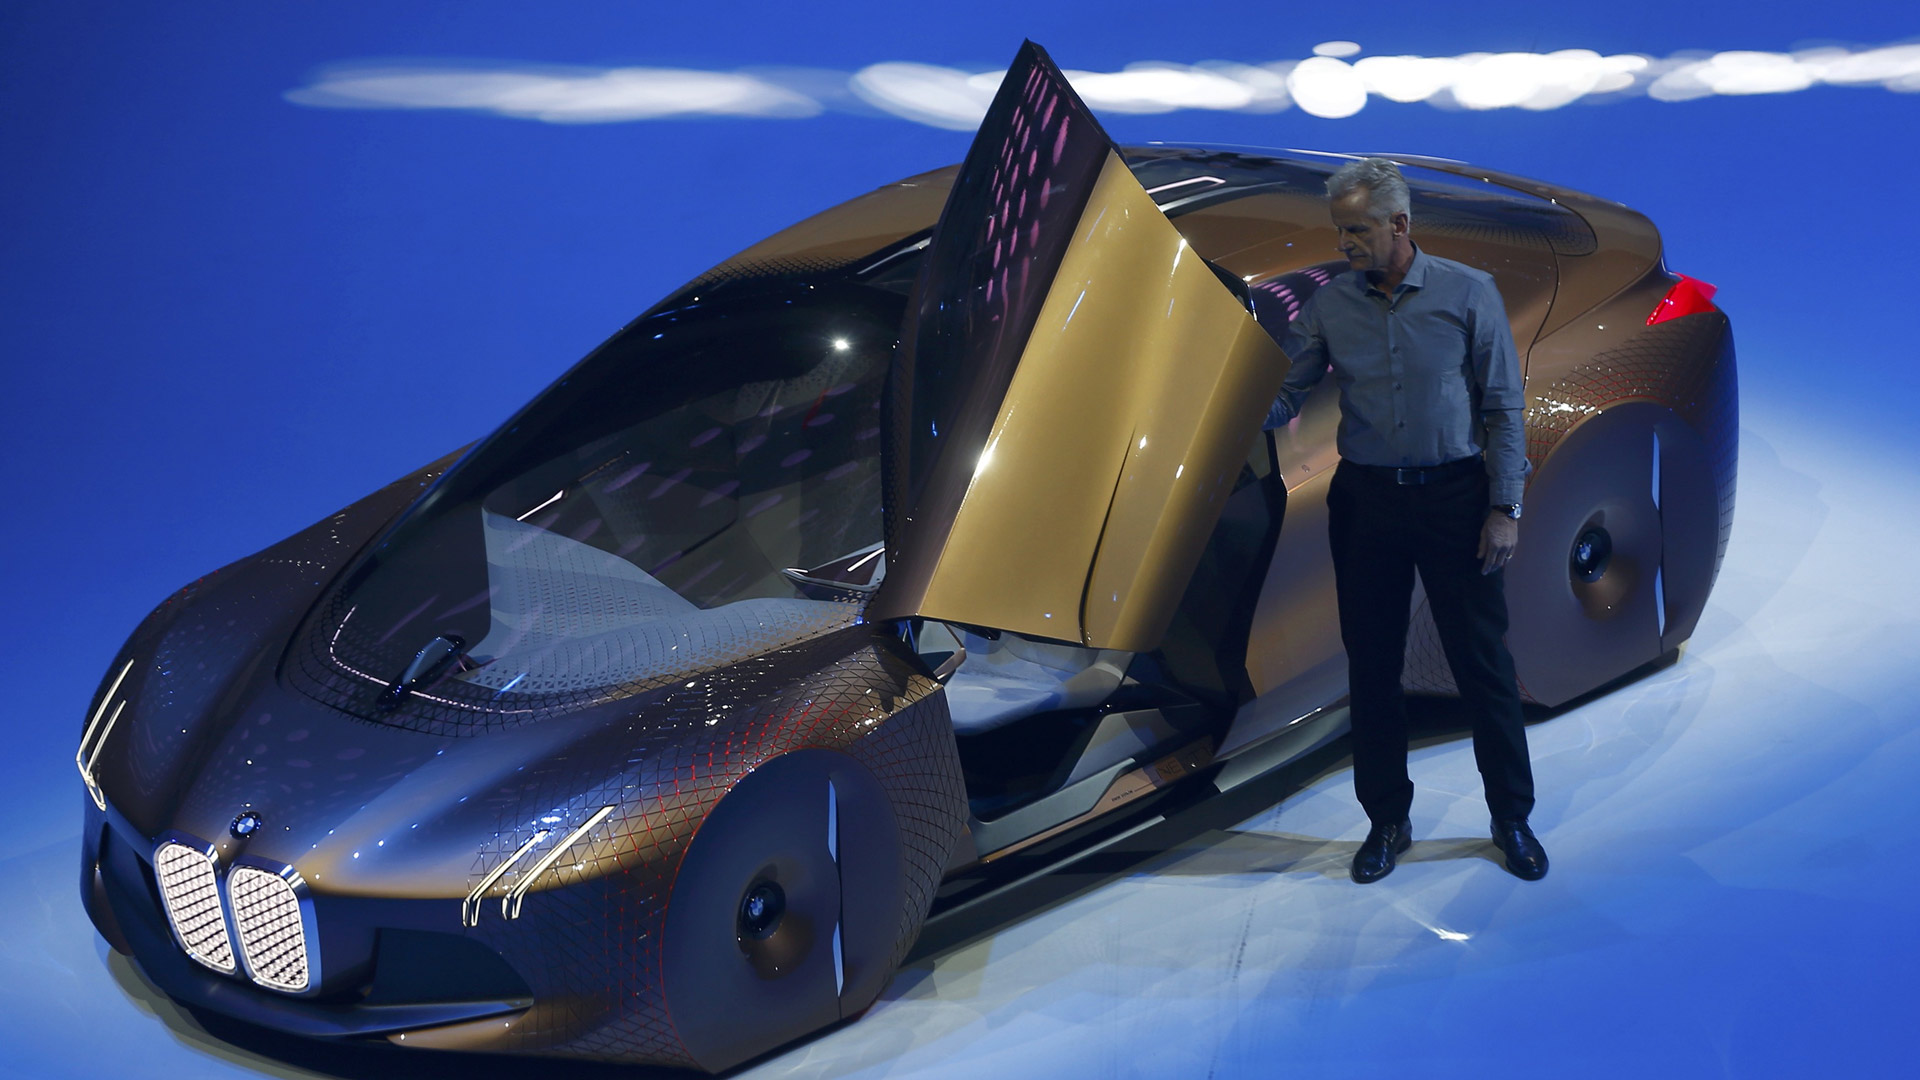 Presentaron el primer coche de conducción autónoma: el BMW Vision Next 100